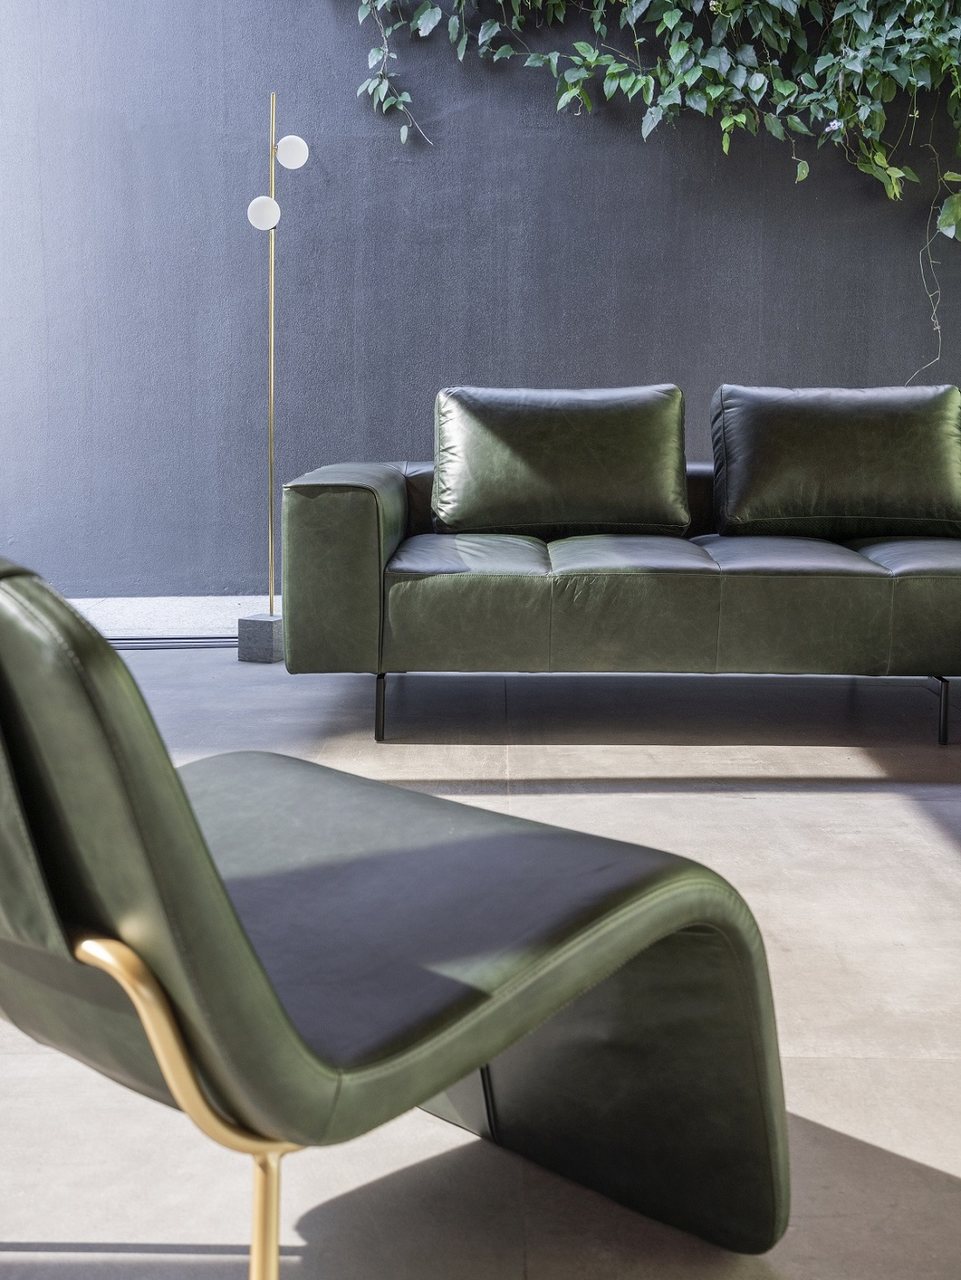 Sofa Baru Salva Design de Mobiliario Easy Resize com